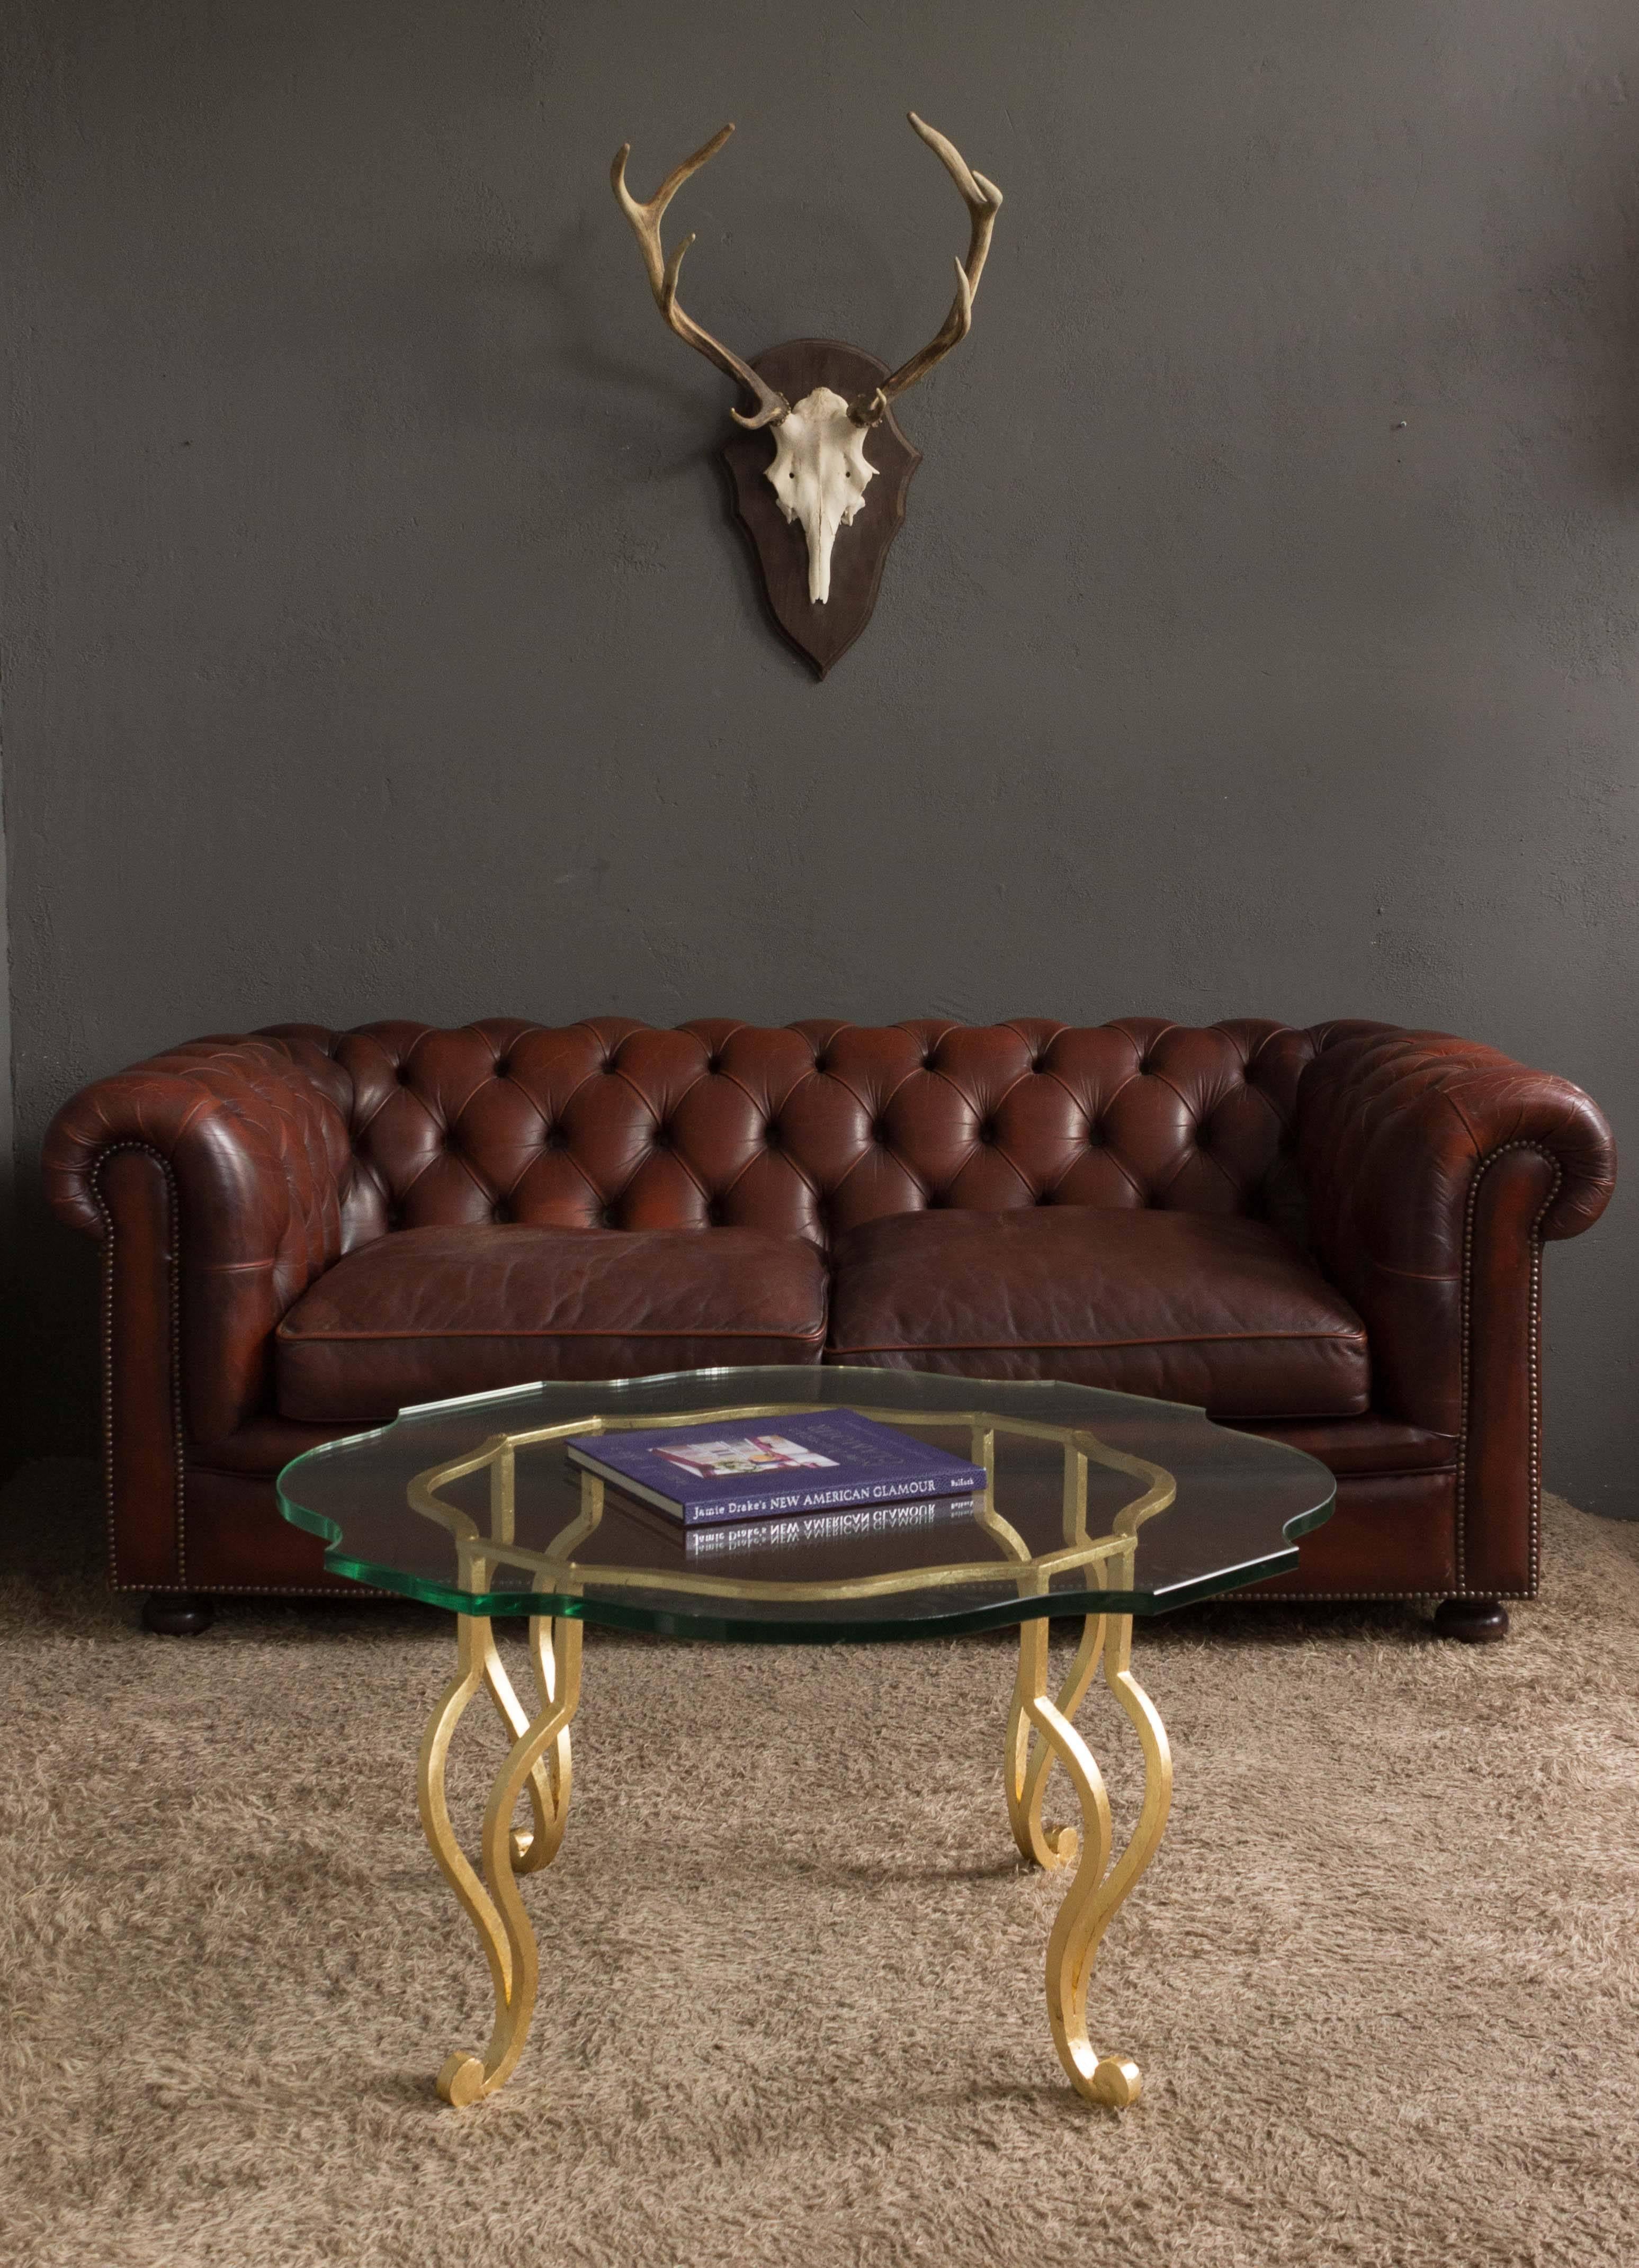 Superbe table basse italienne en fer doré des années 1940 avec une surface en verre transparent personnalisée. Ajoutez une touche de luxe à votre salon avec cette table basse italienne ornée en fer doré datant des années 1940. Les détails complexes